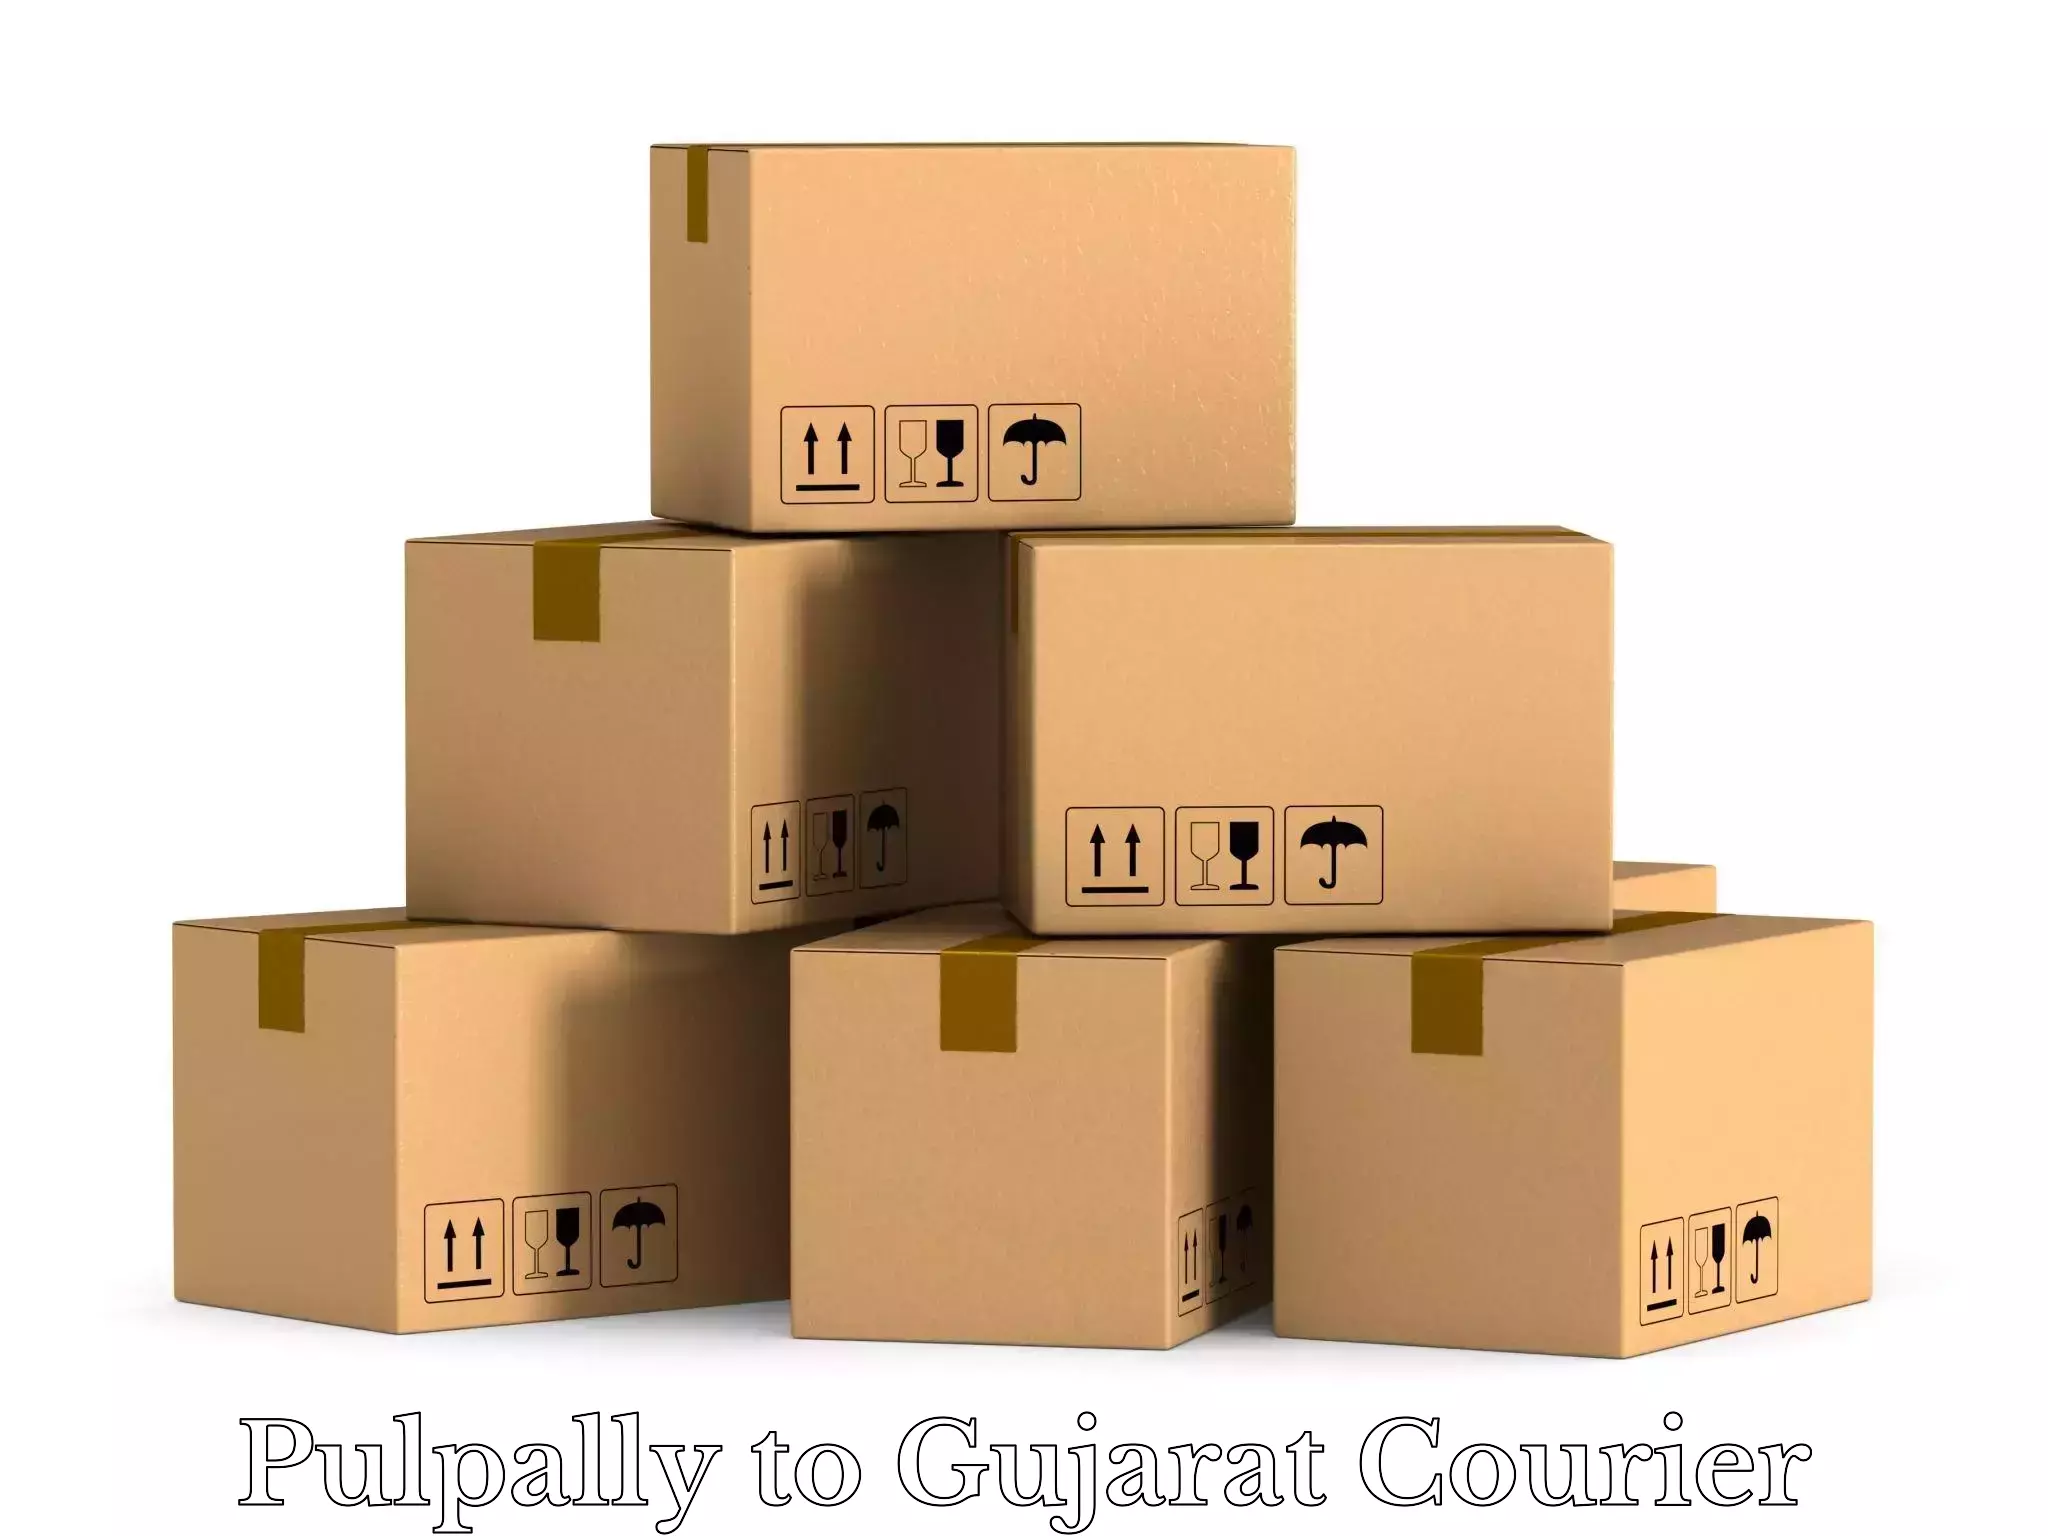 Baggage delivery optimization Pulpally to Gandhinagar